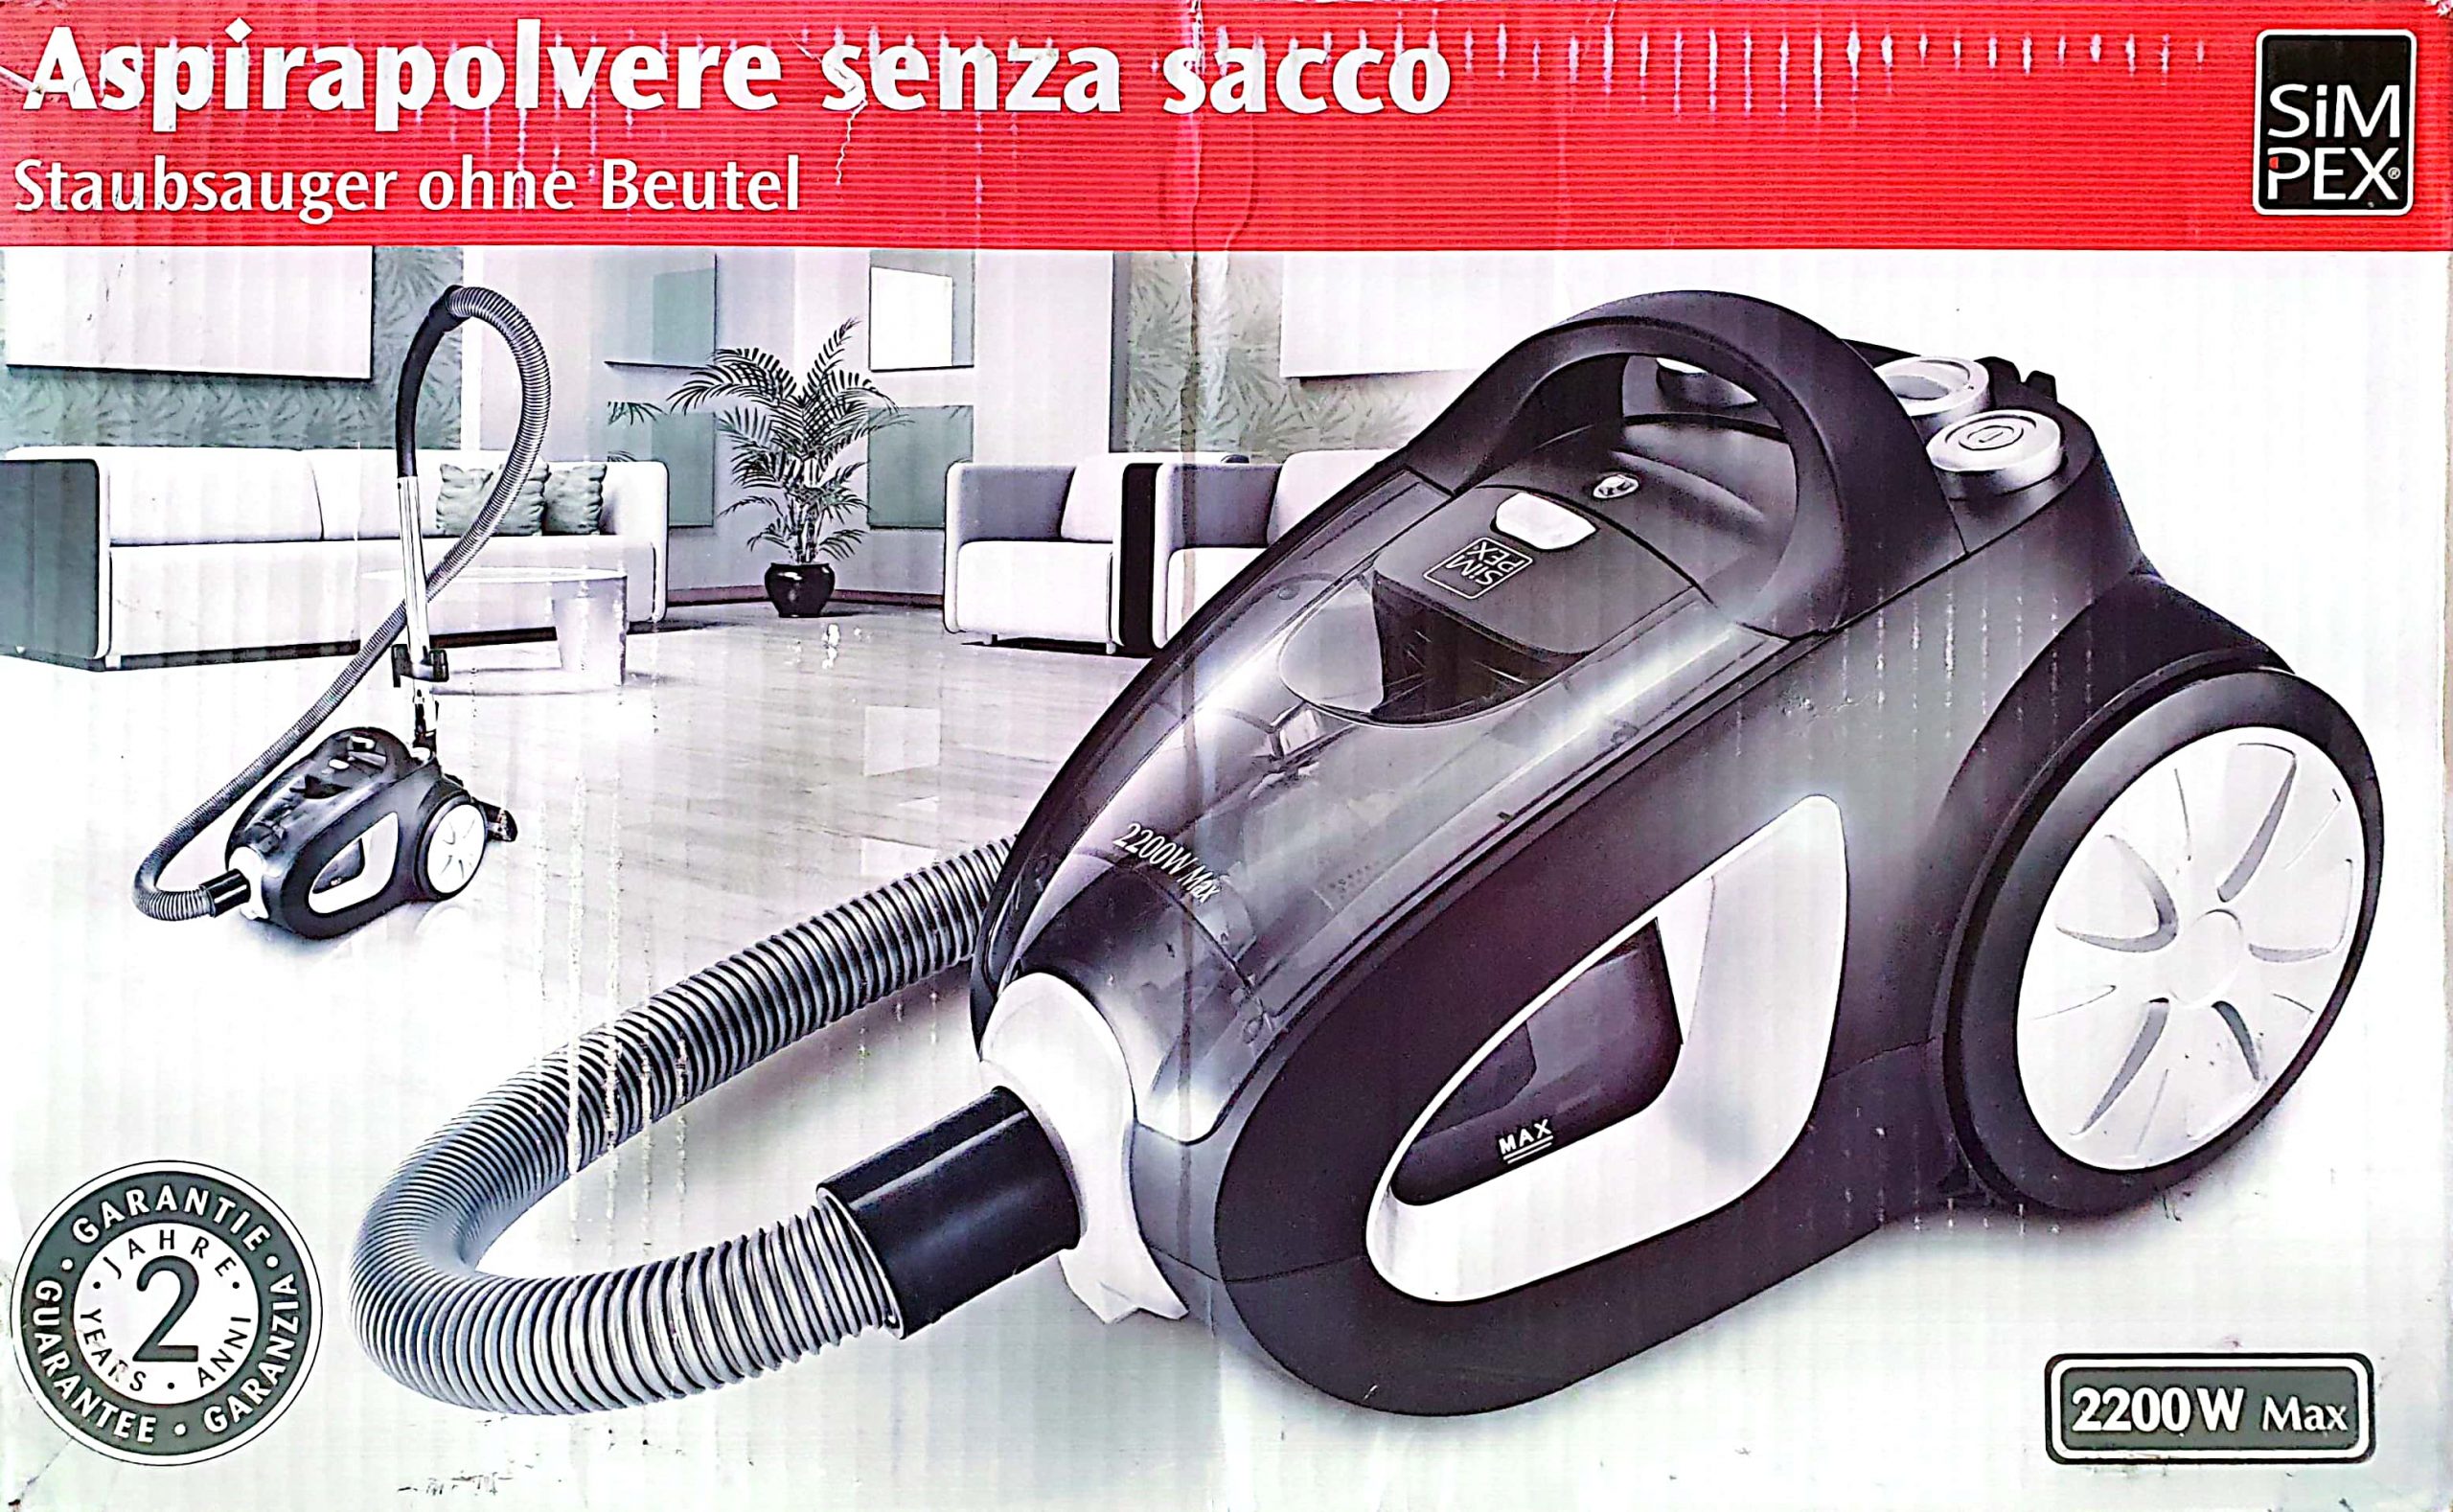 ASPIRAPOLVERE SIMPEX SENZA SACCO 2200 WC USATO - BBM Project Technology®